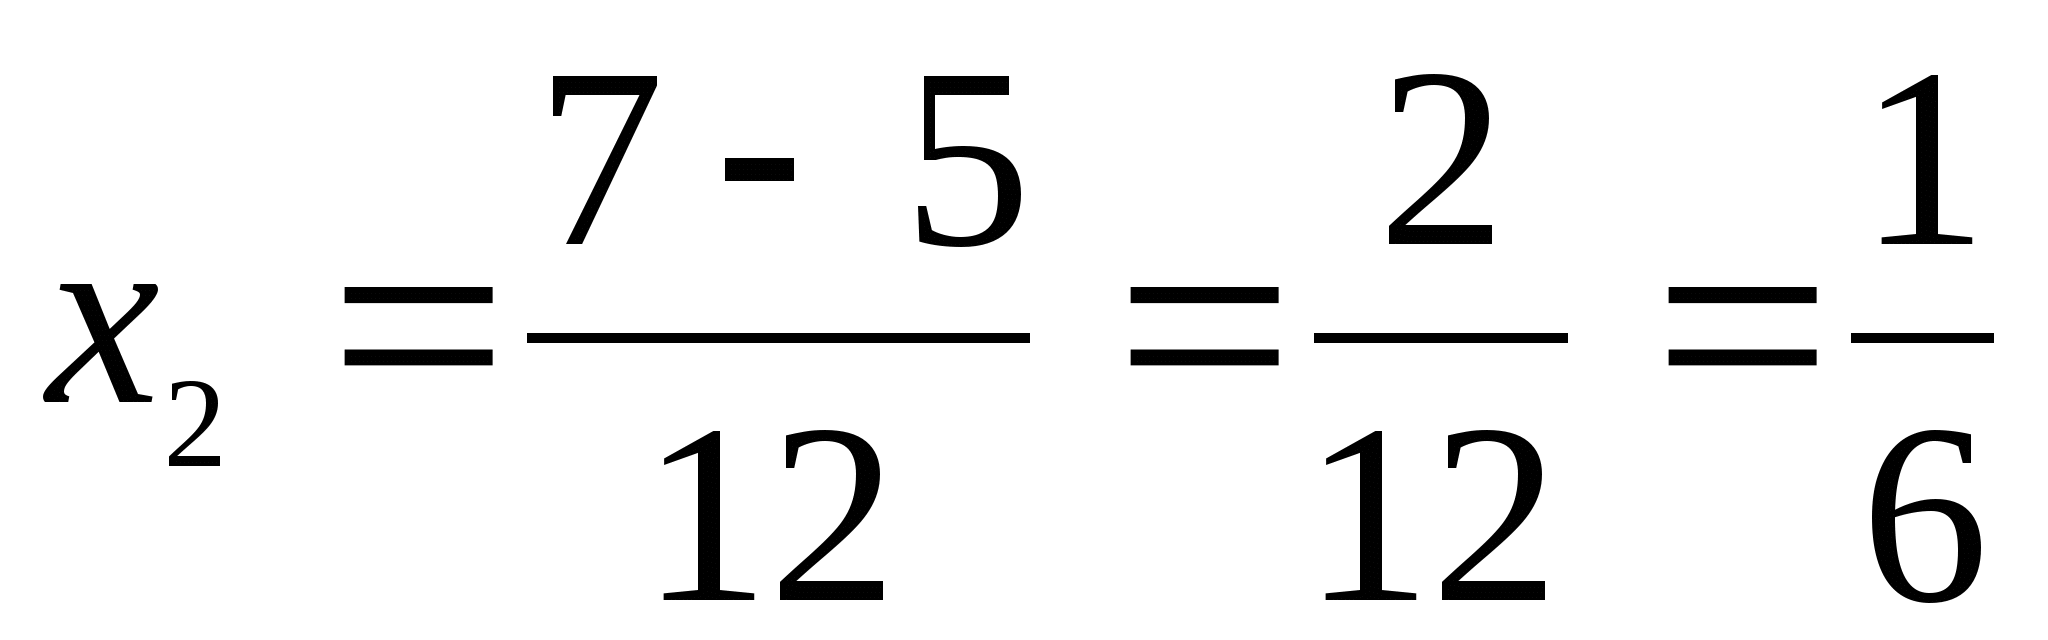 Конспект урока по алгебре на тему Биквадратные уравнения (8 класс)